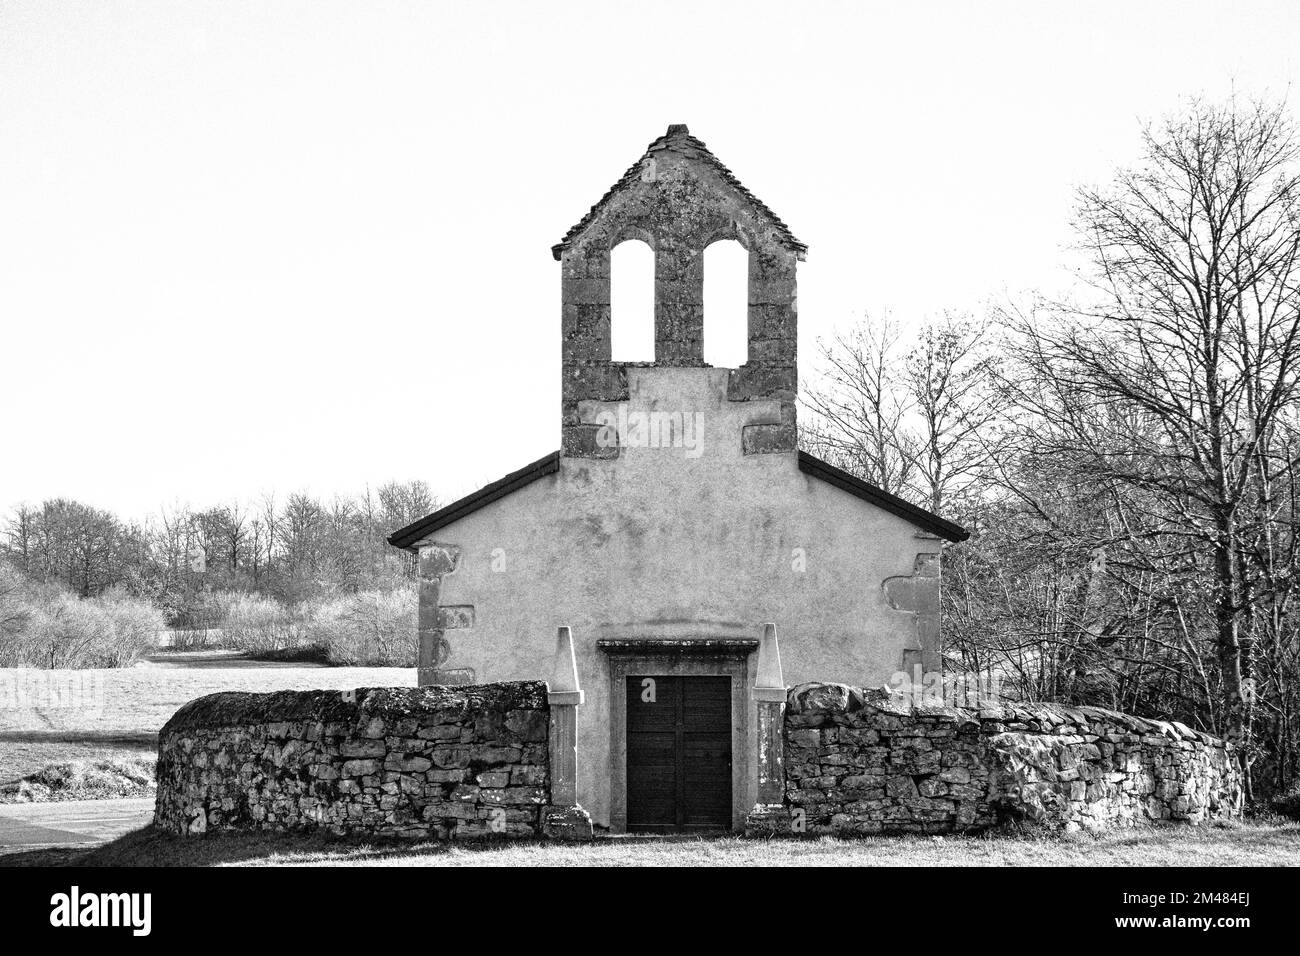 Black & white, monochrome photo of a medieval old stone church in Kras, Slovenia Stock Photo